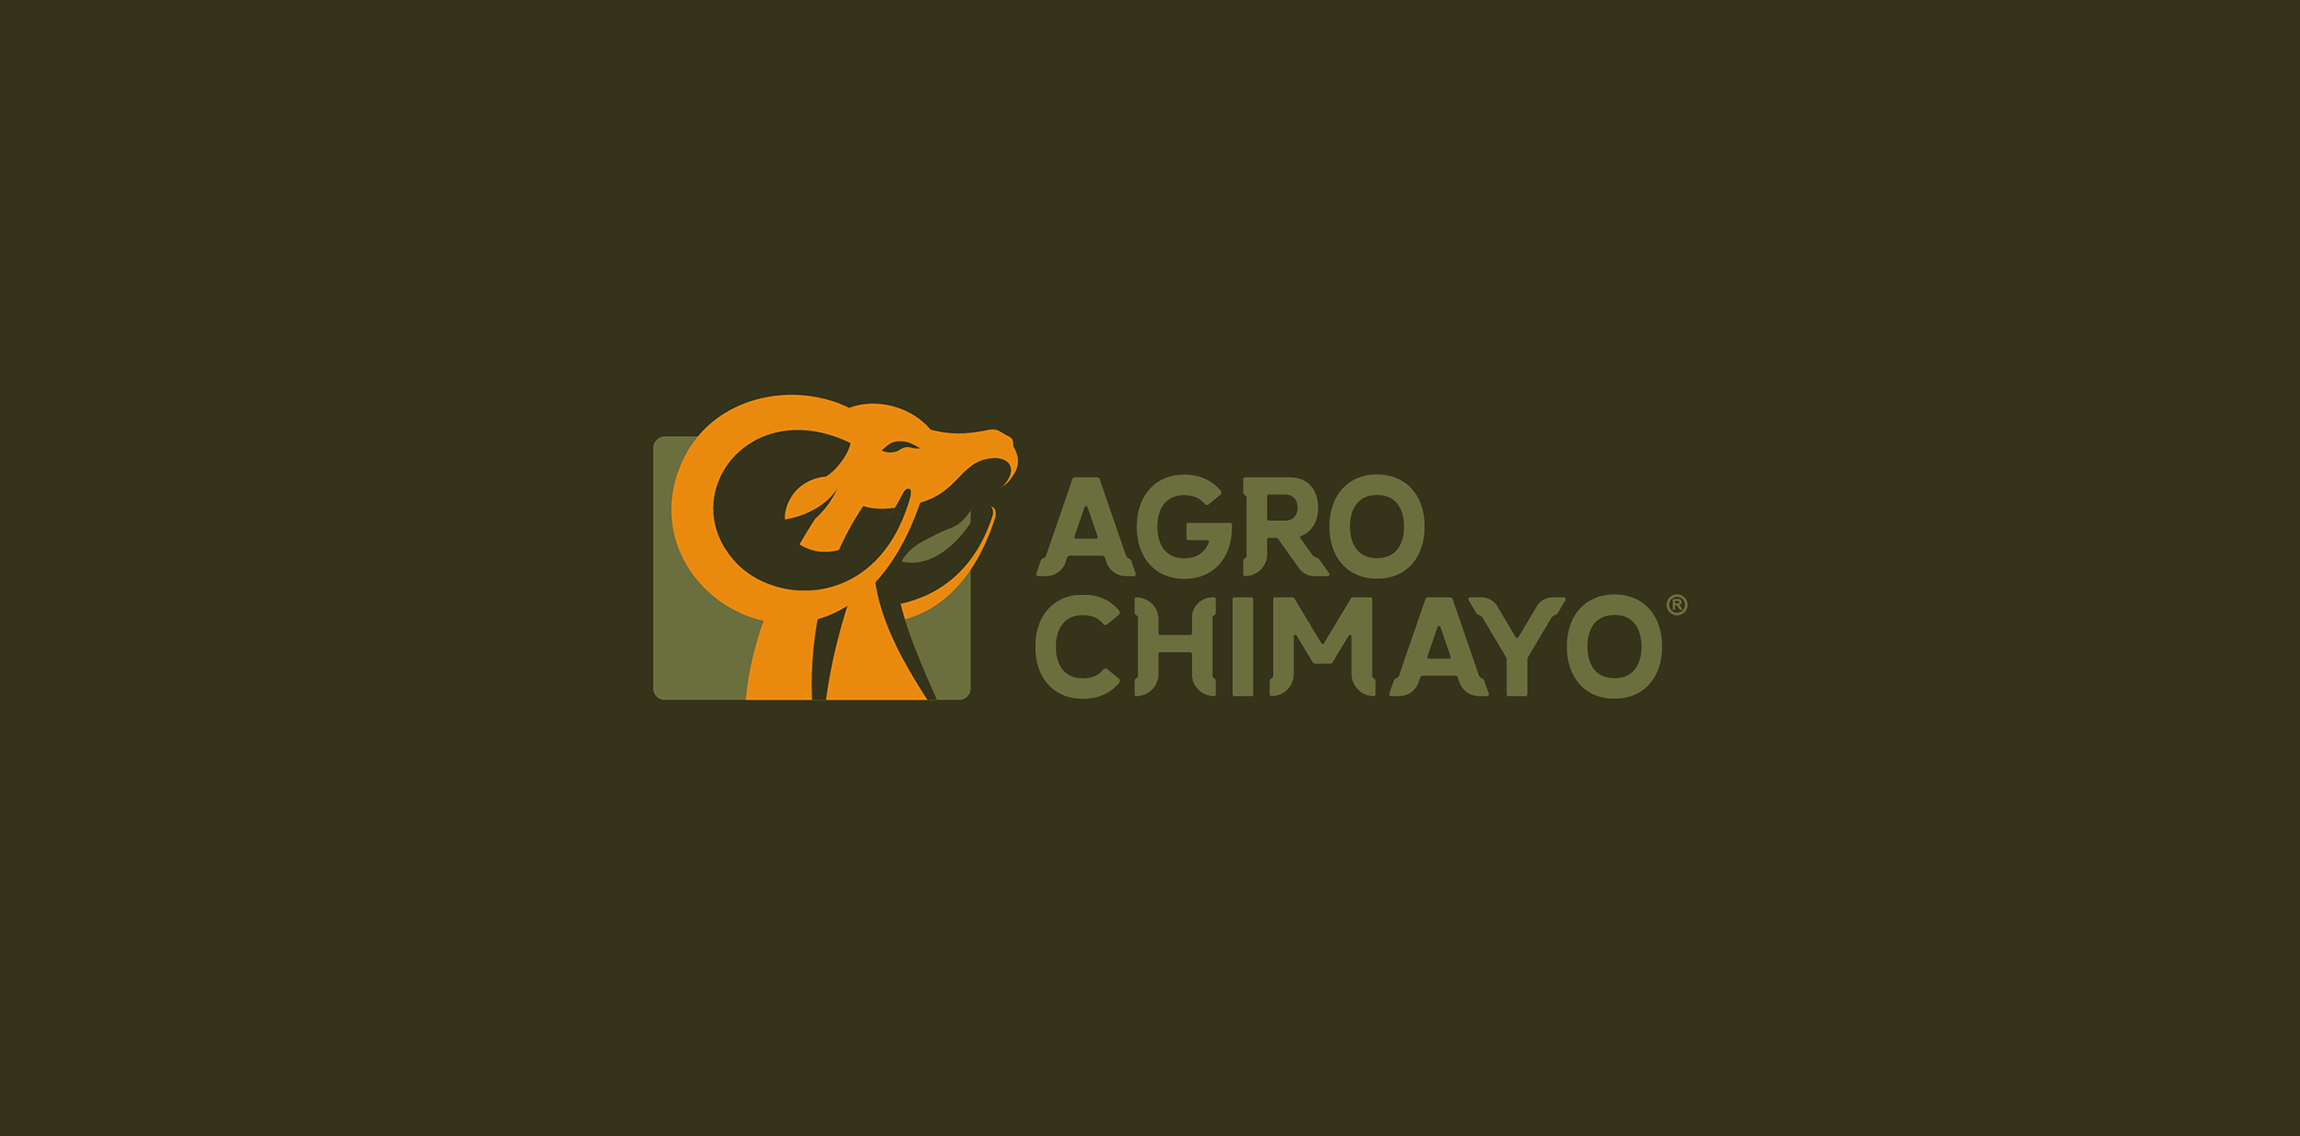 Agro Chimayo